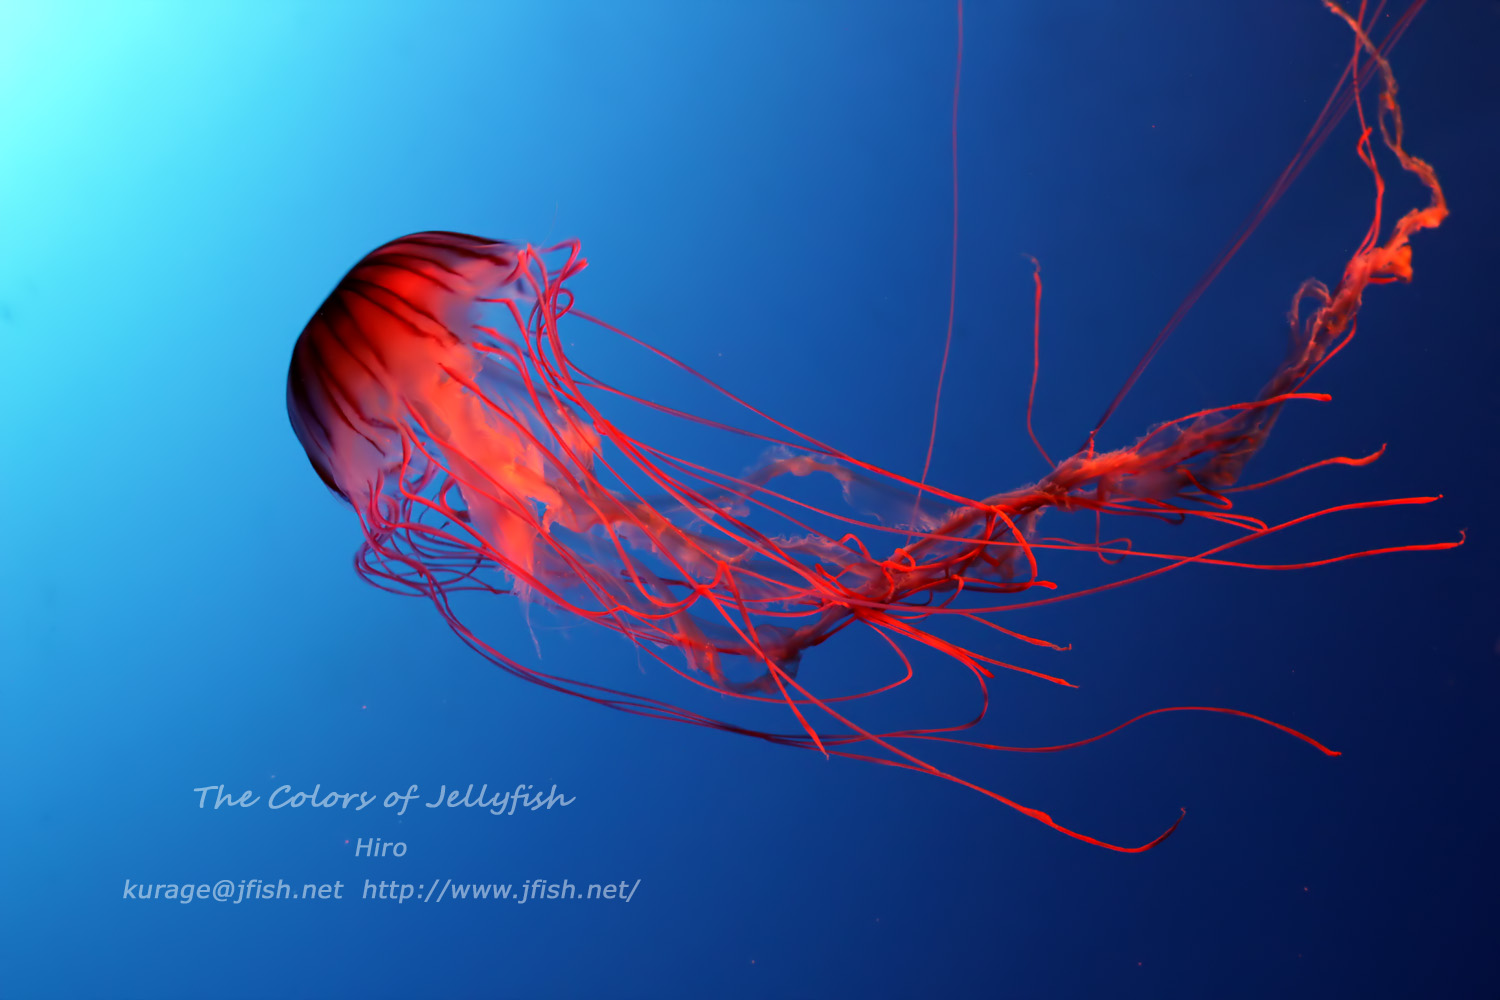 毒・アカクラゲ – くらげの幻想世界 – Mystery of Jellyfish photo world –